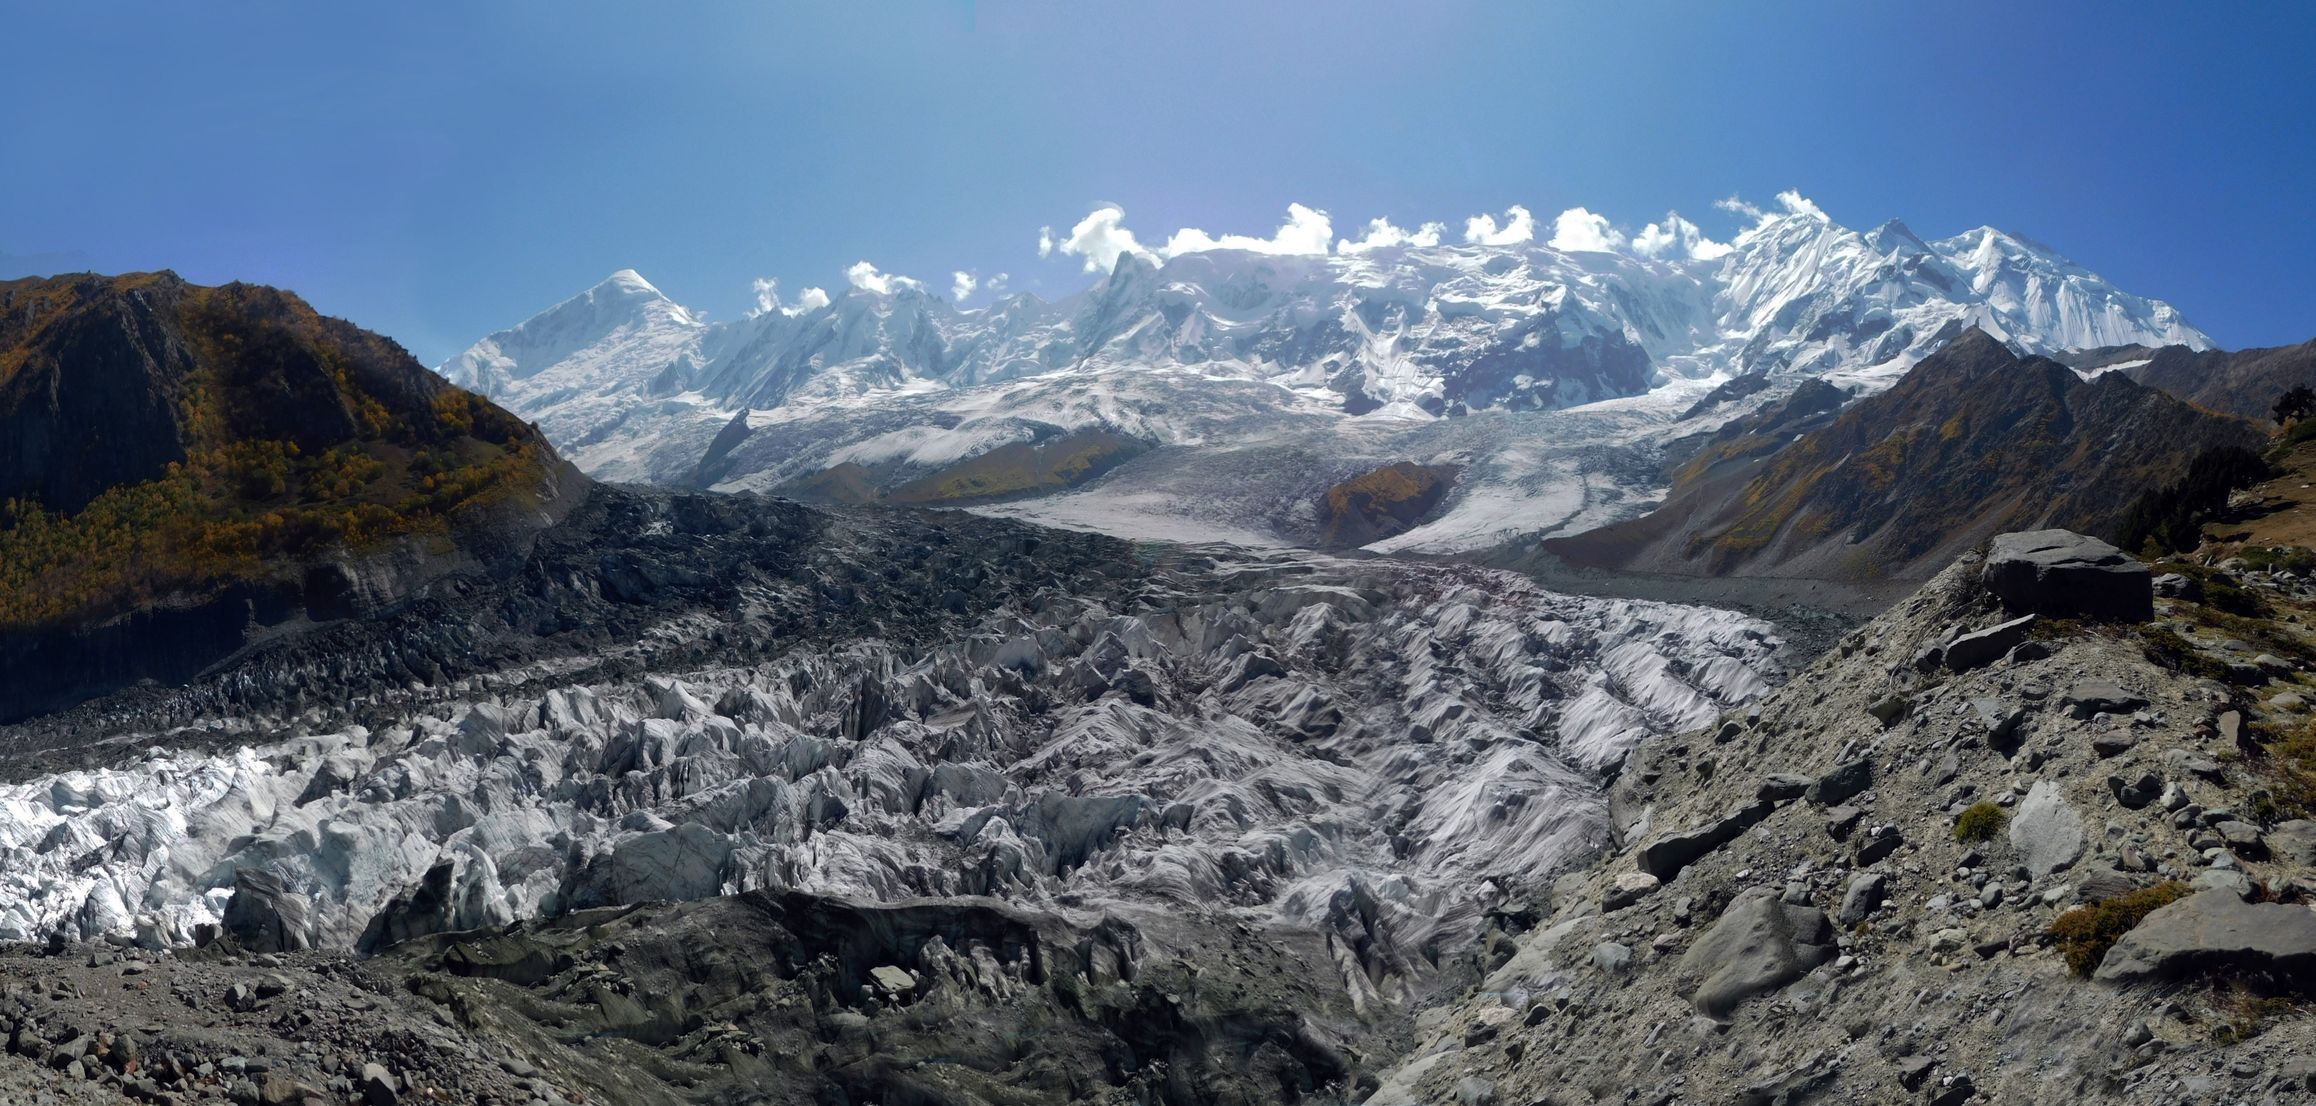 Hora Rakapoši (7 788 metrů) v Pákistánu